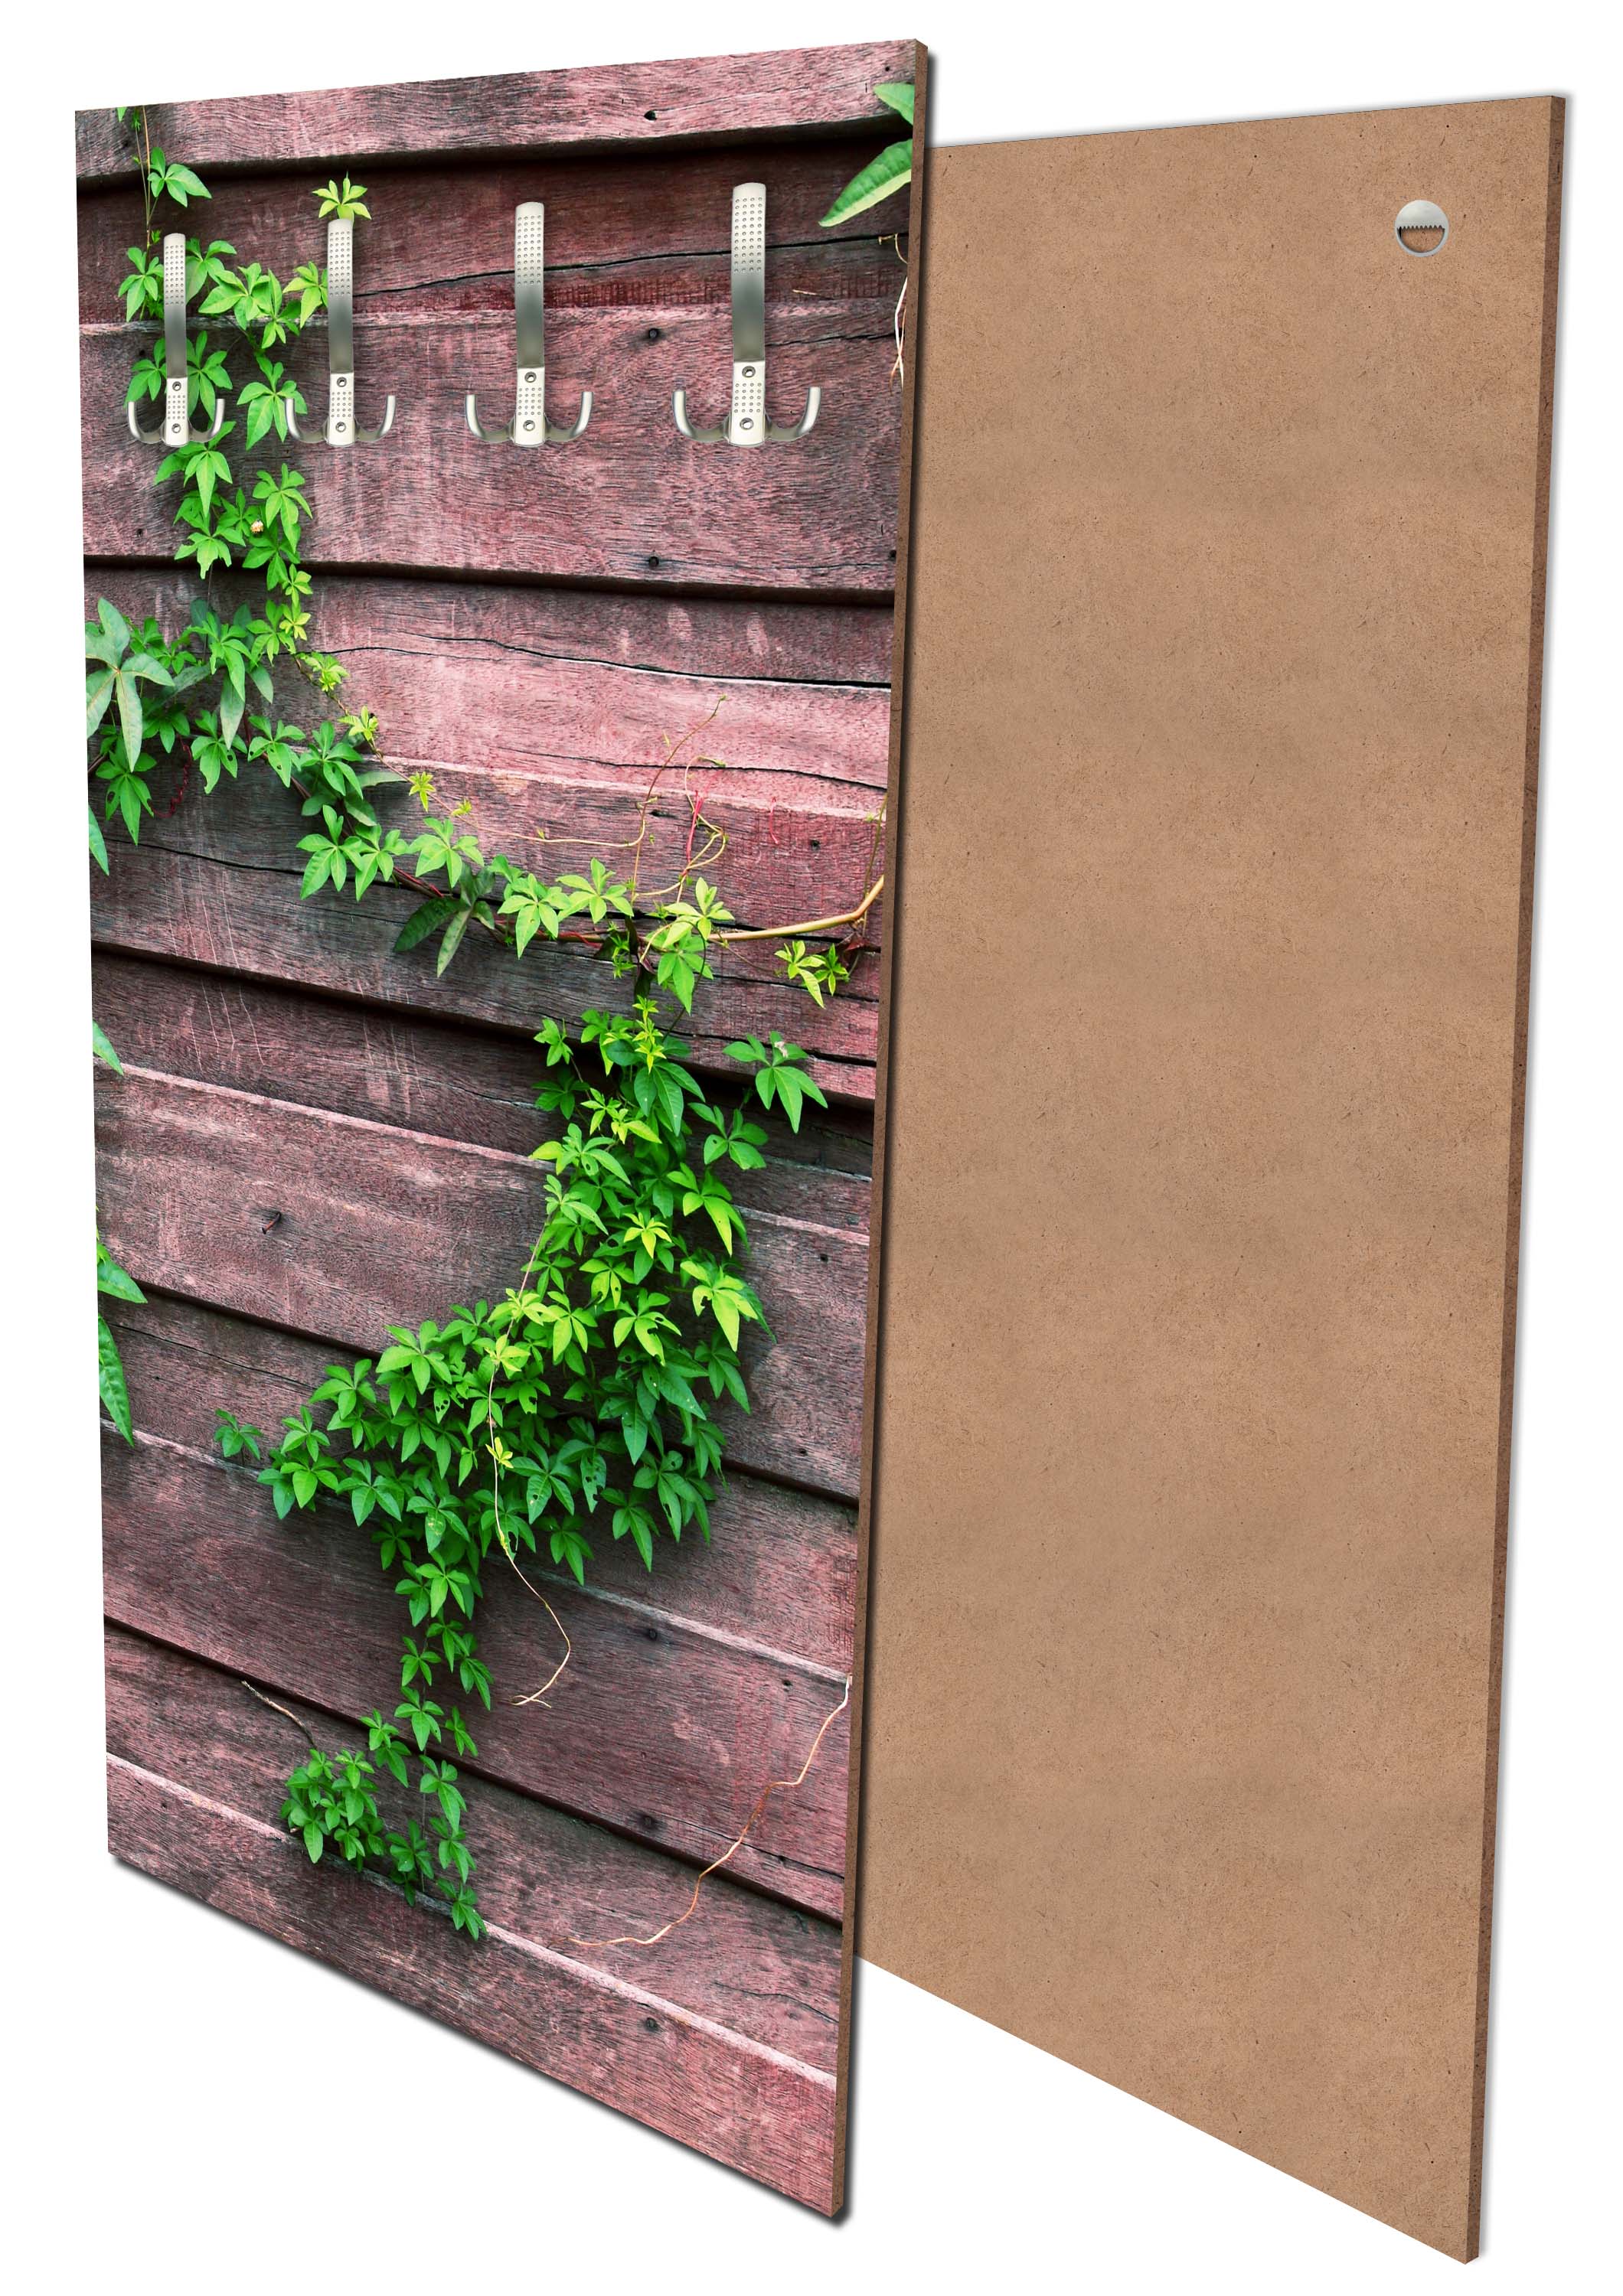 Garderobe Wand mit Kletterpflanze M1004 entdecken - Bild 1